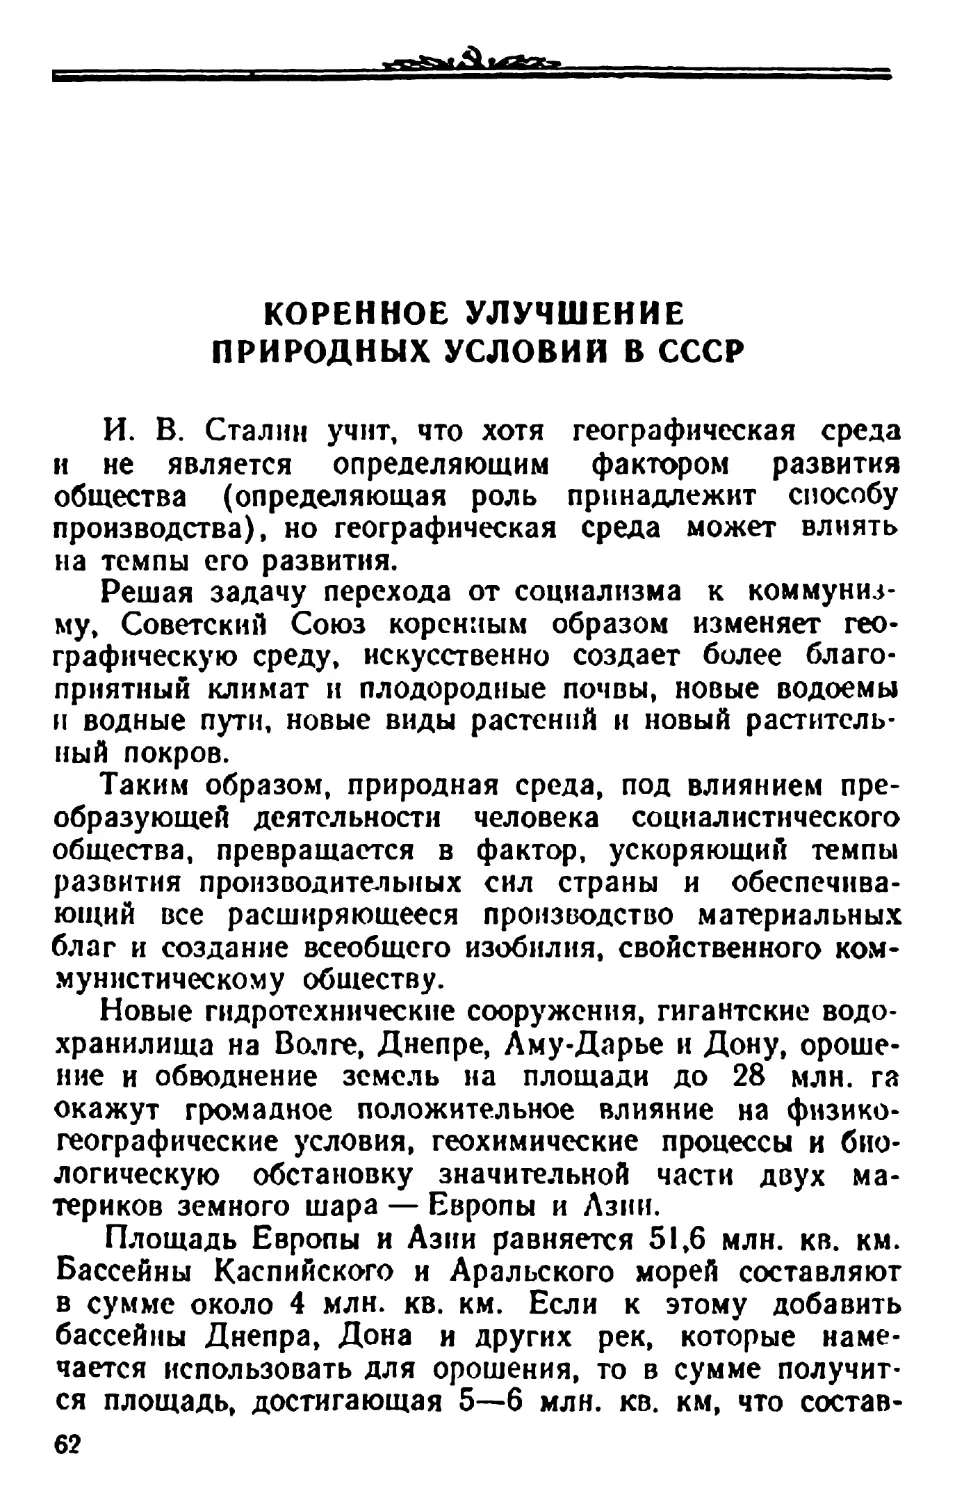 Коренное улучшение природных условий в СССР.